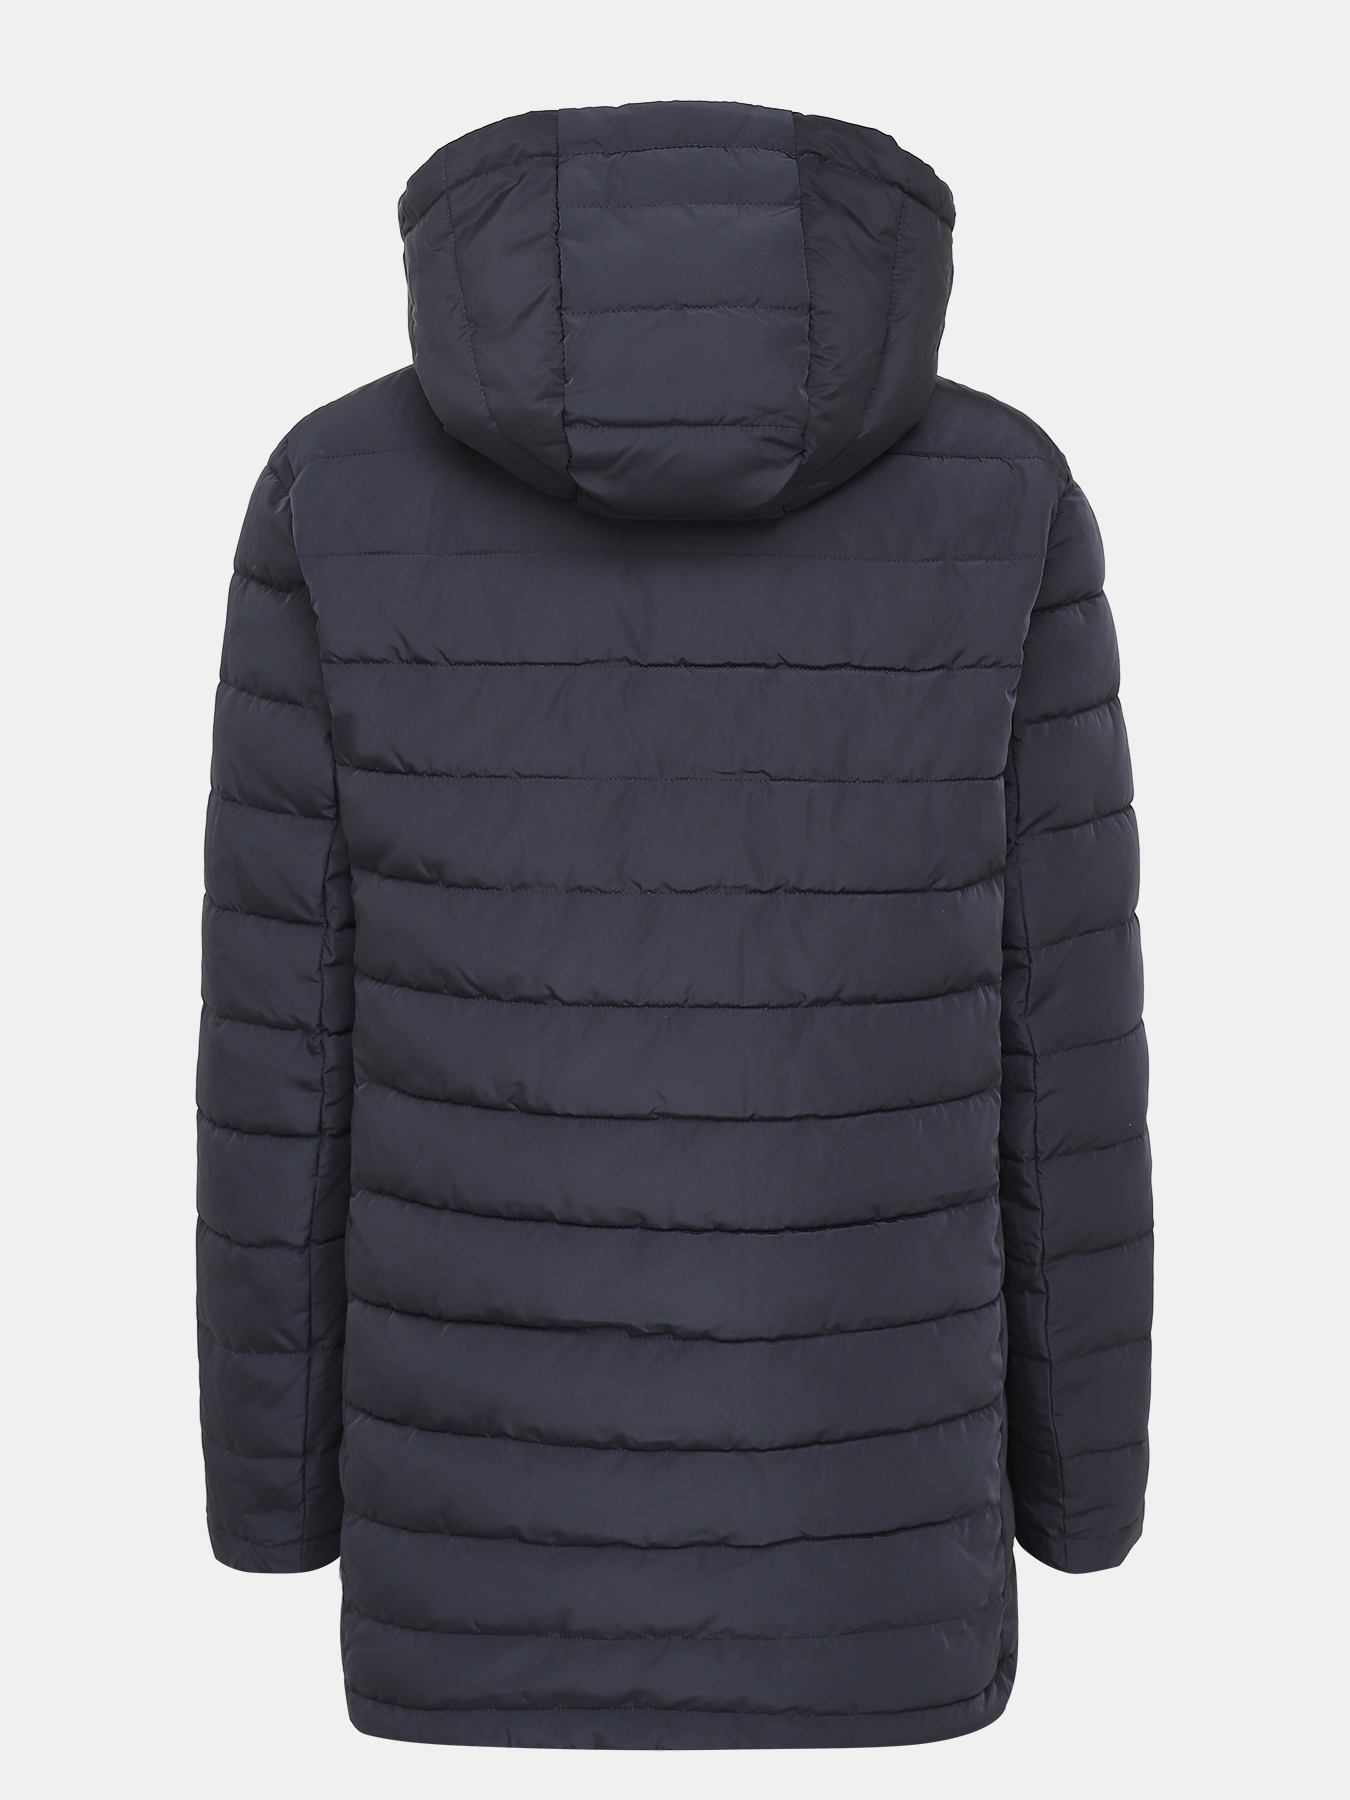 Двусторонняя куртка Alessandro Manzoni Purpur 405294-241, цвет темно-синий, размер 46-48 - фото 3